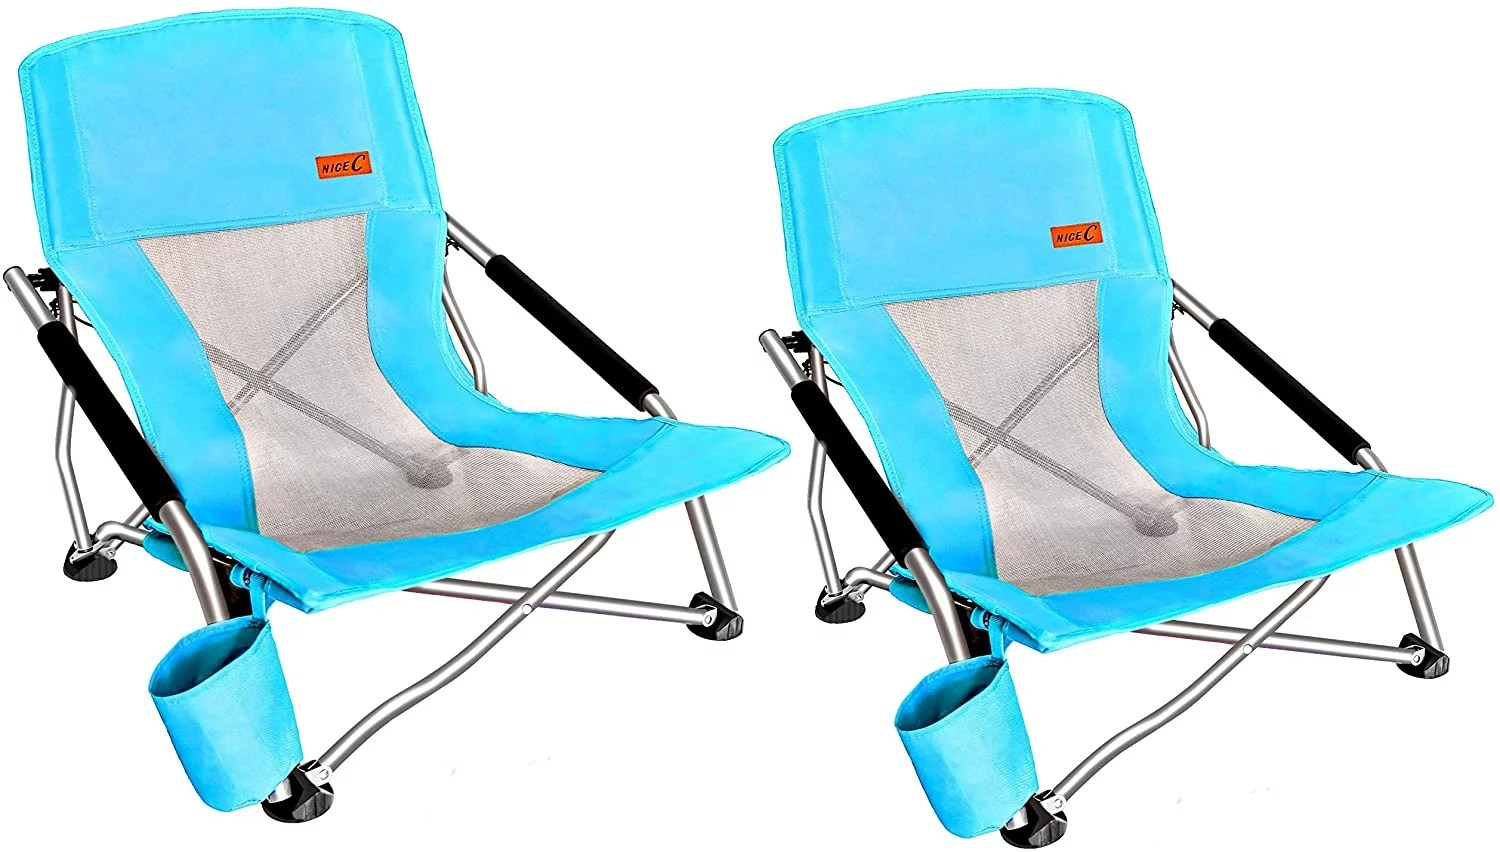 Nice C Low Beach Chair, best beach chairs